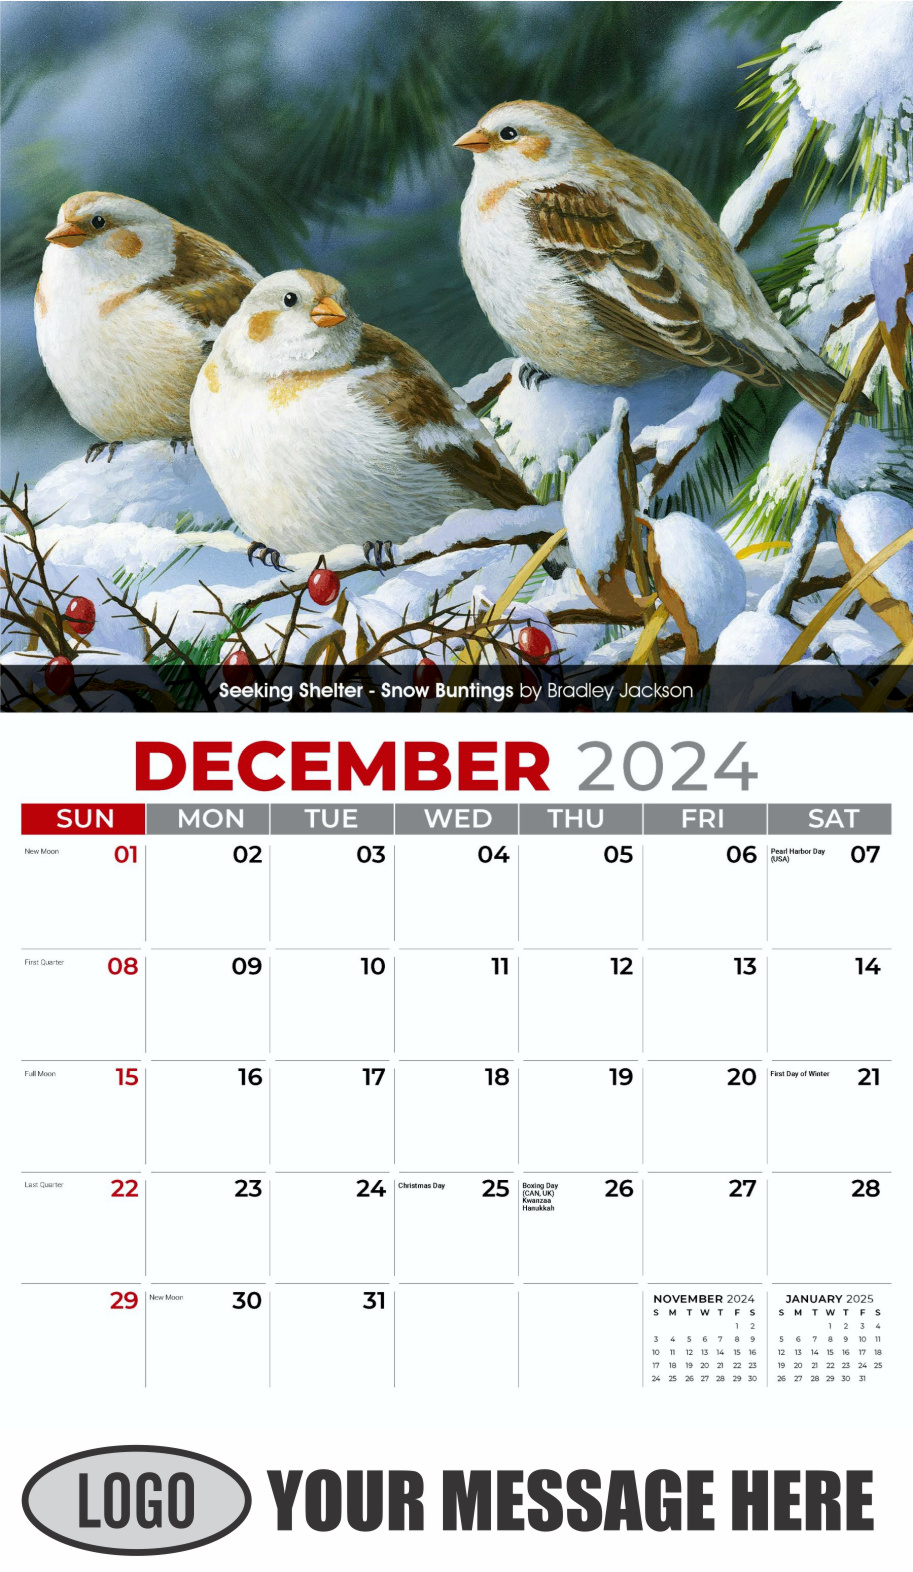 Garden Birds 2024 Business Promotional Calendar - December